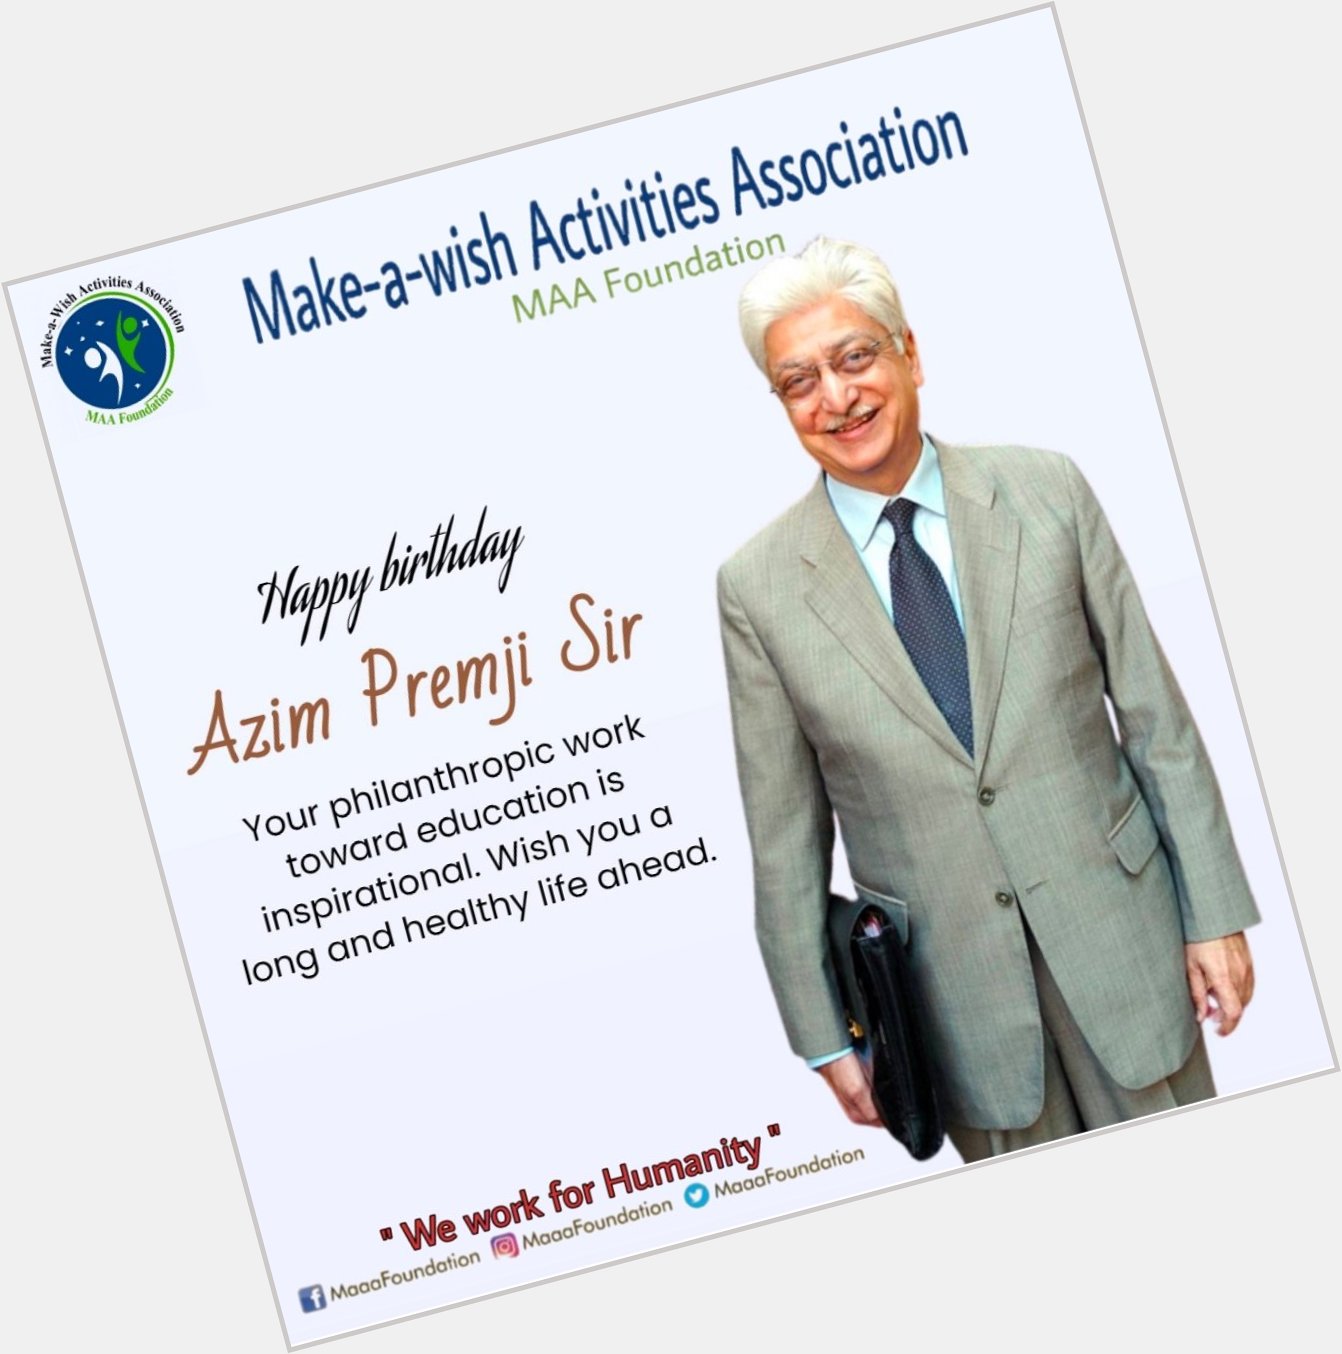 Happy birthday Azim Premji sir    